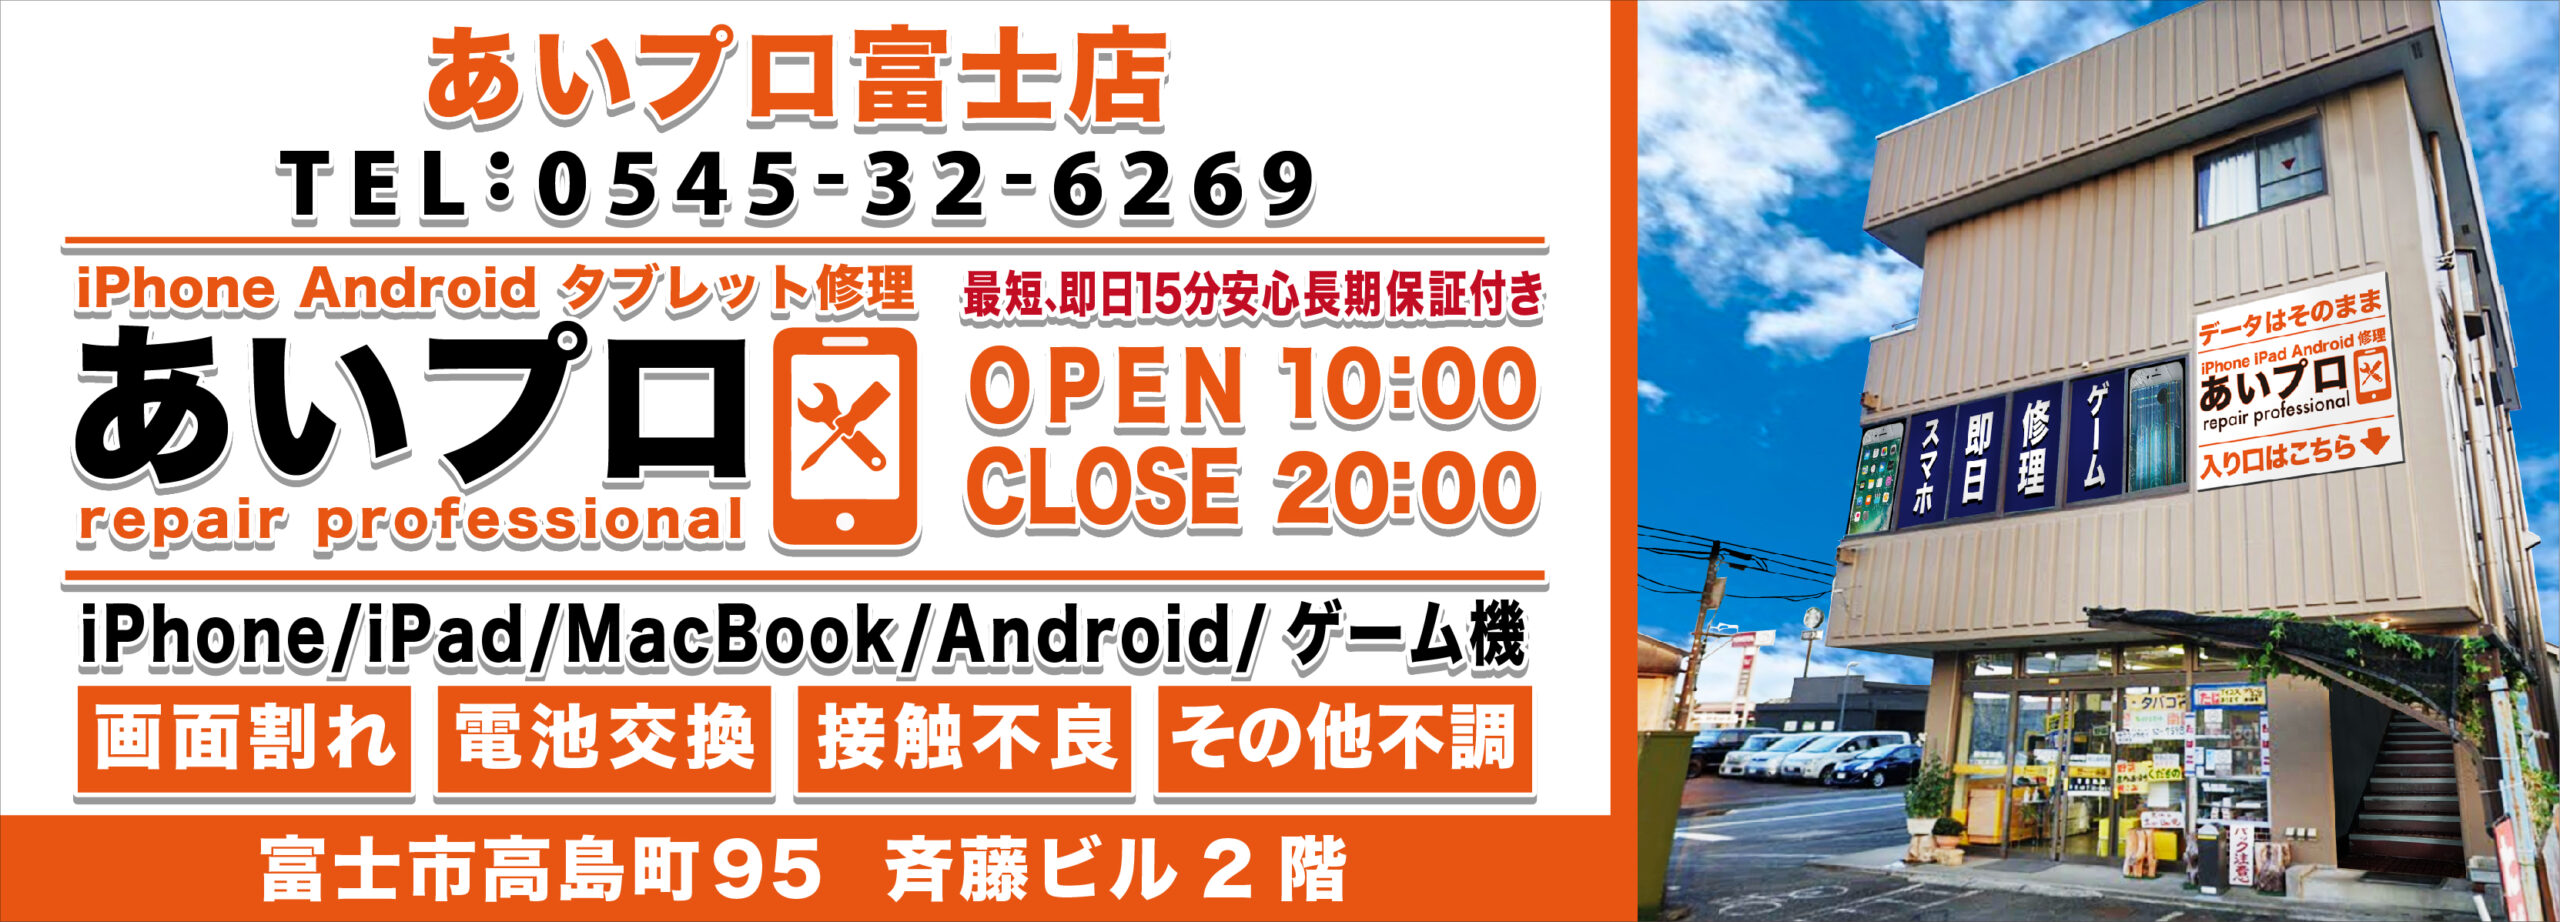 富士店 Android修理料金表 メインビジュアル 1